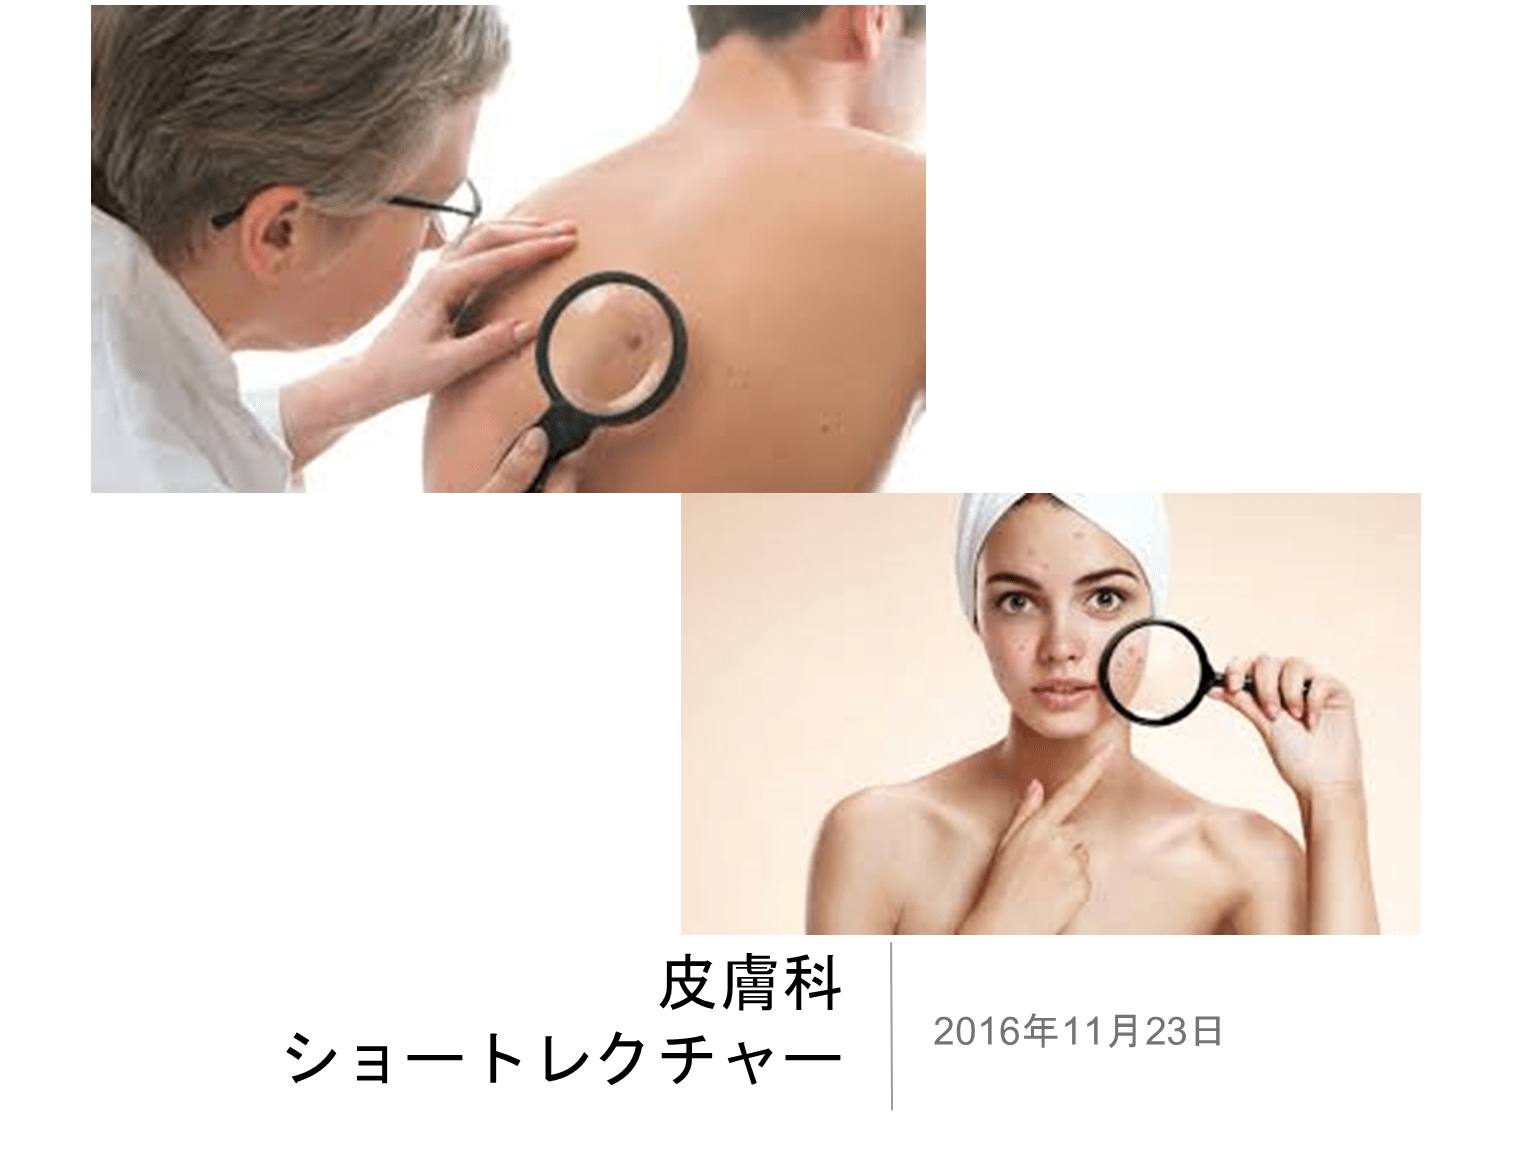 スキルアップ皮膚科講座 L001.png